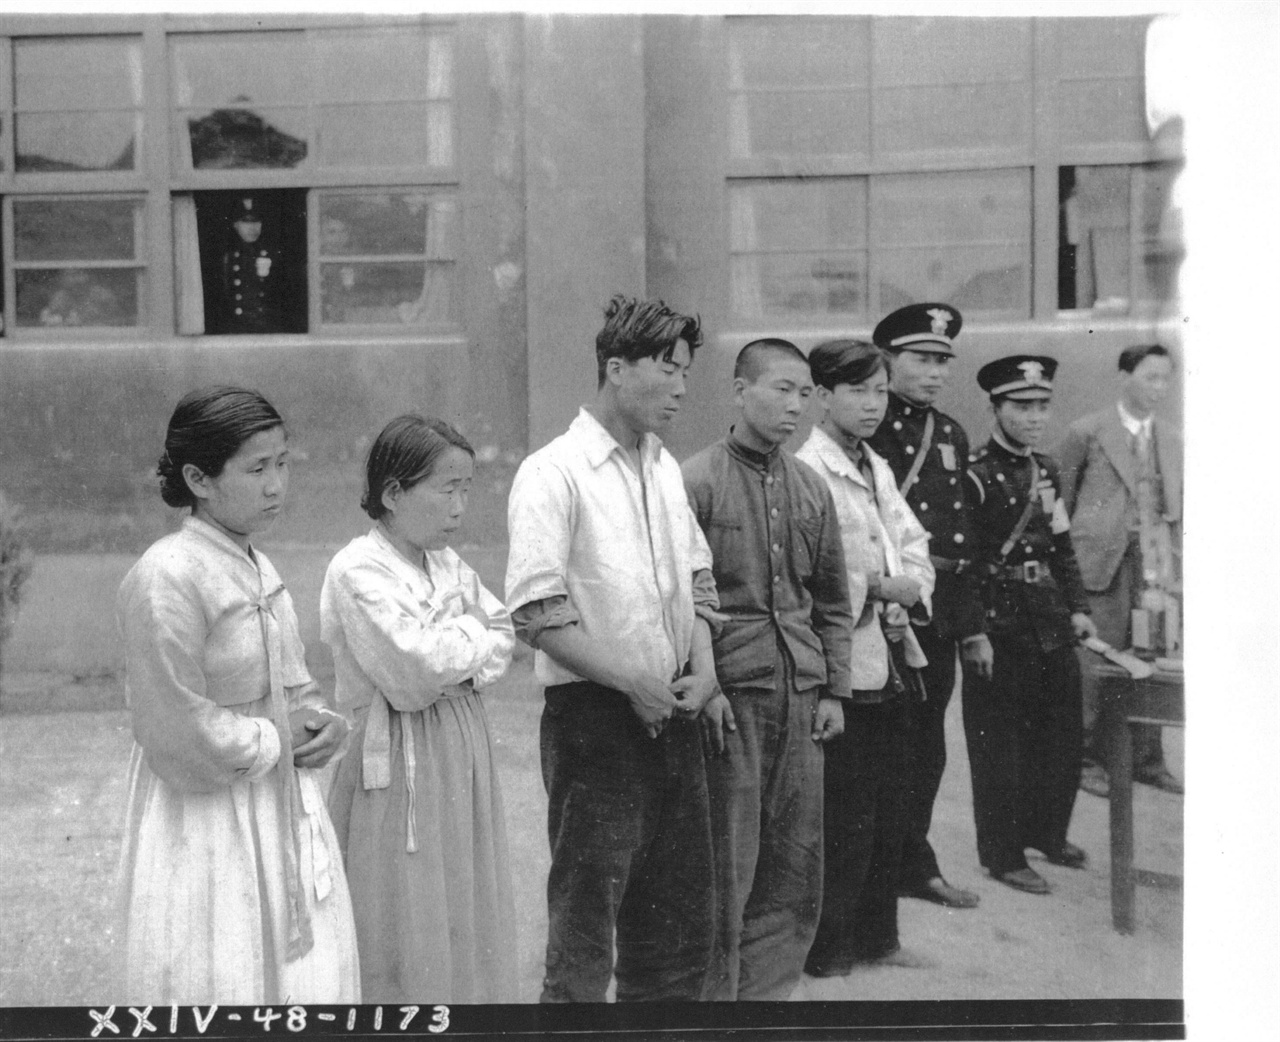  1948. 5. 10. 새 정부 수립 총선거를 방해한 혐의로 경찰에 연행된 주민들. 